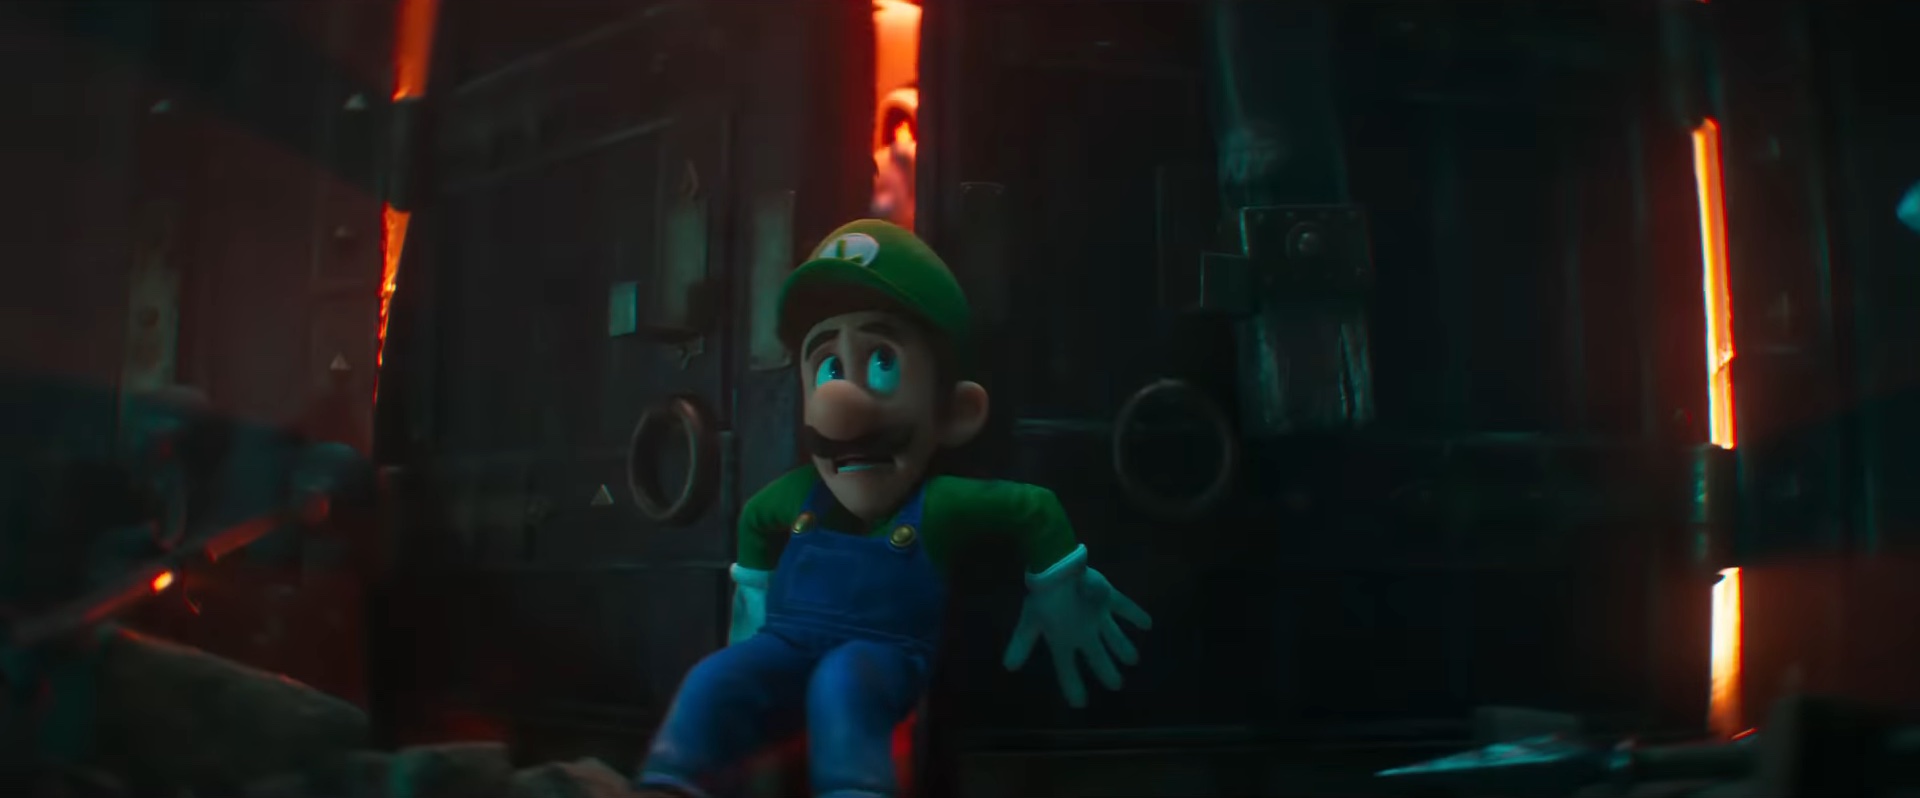 Luigi against a door as Dry Bones try to capture him in "The Super Mario Bros. Movie."